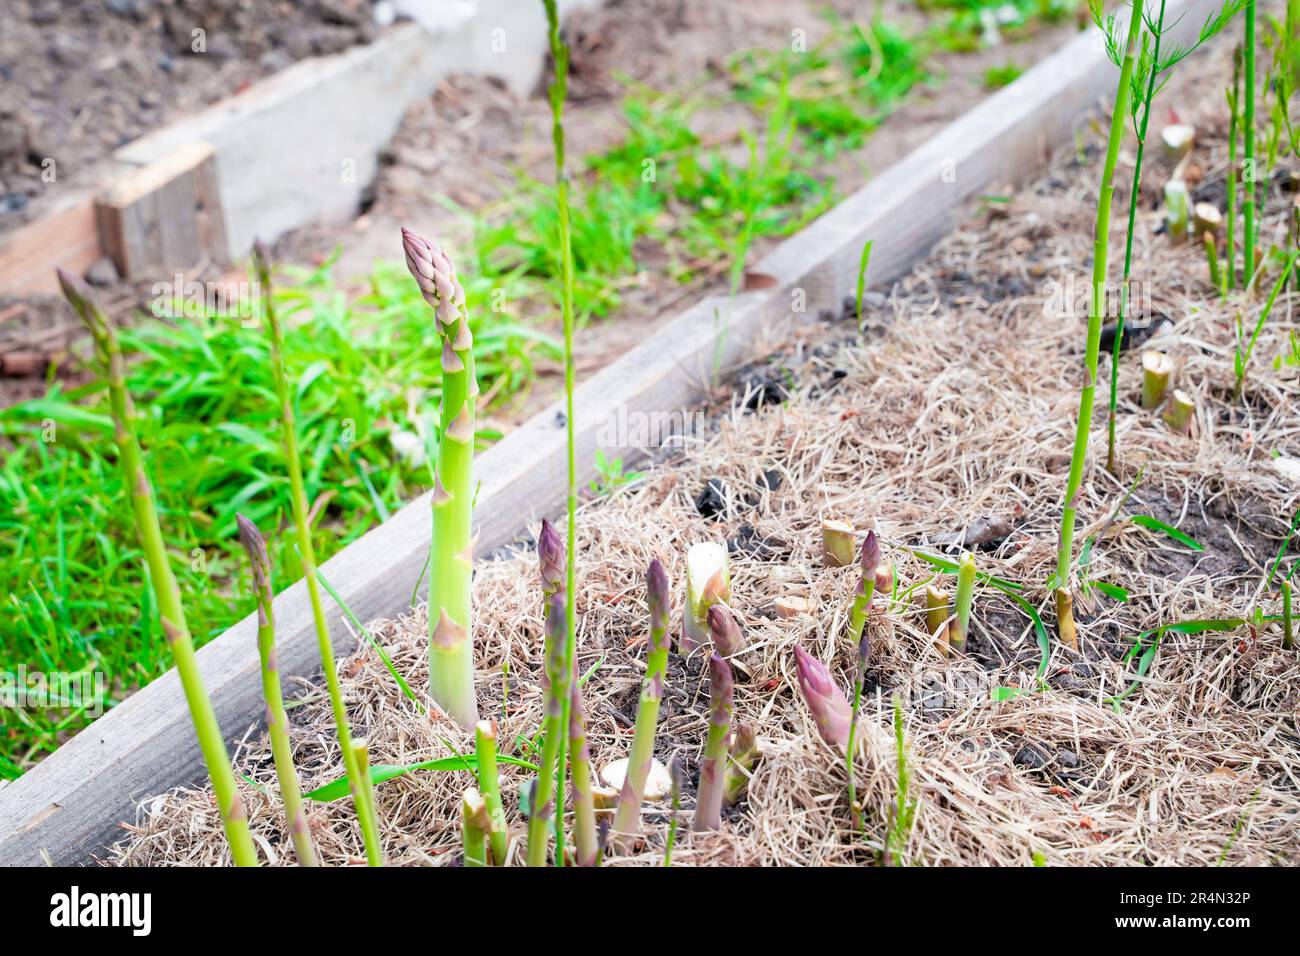 Grüner Spargel-Shoot wächst aus nächster Nähe.Anbau von gesundem Gourmet-Gemüse im Garten Stockfoto